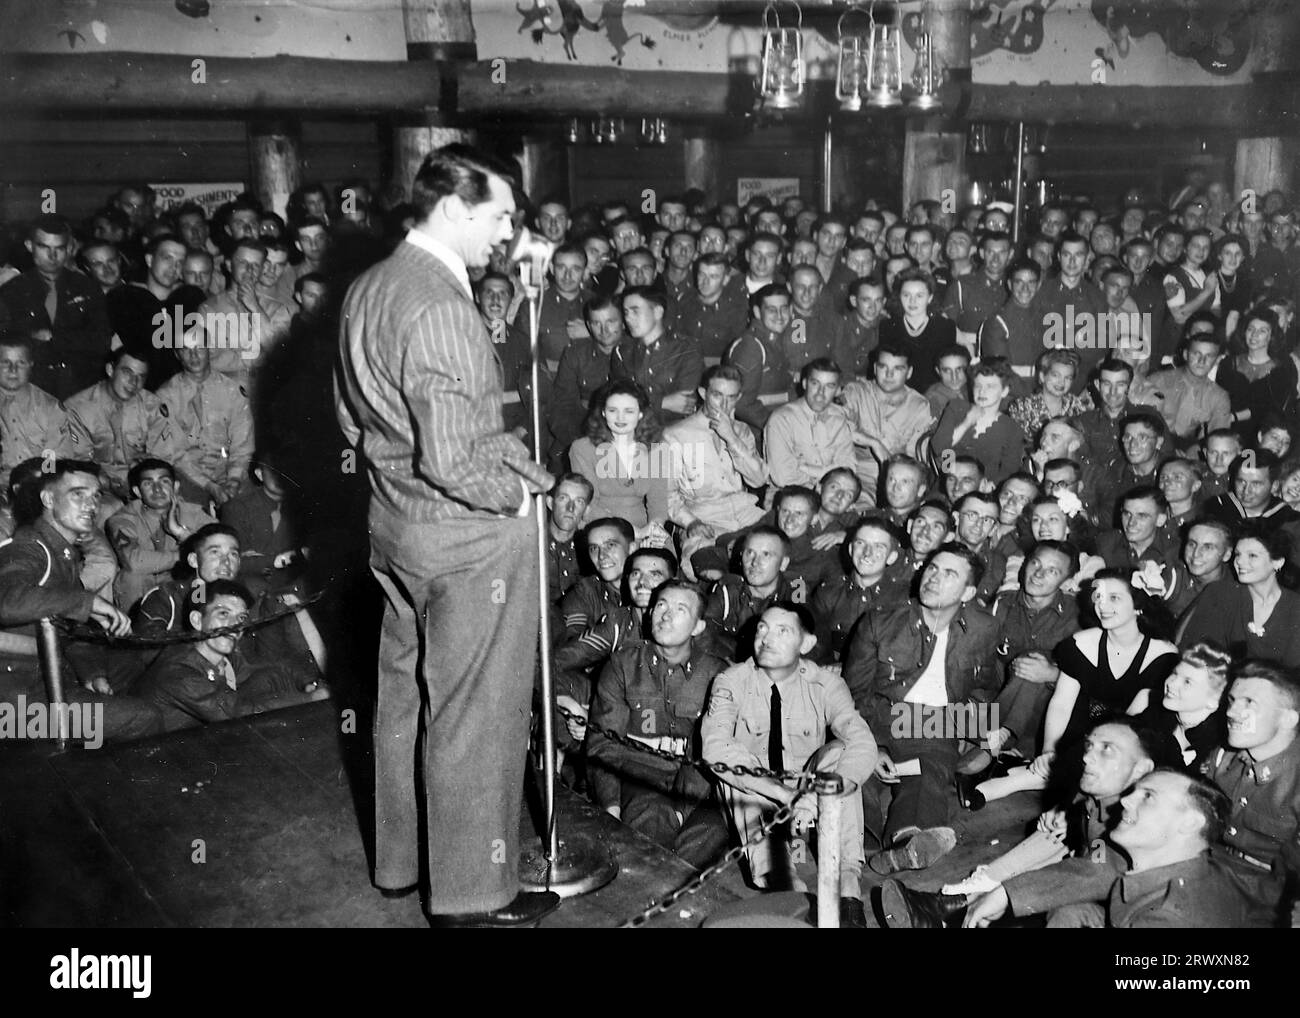 Cary Grant auf der Bühne, spricht an britische Truppen, Hollywood. Seltenes Foto: Aus einer Sammlung eines unbekannten britischen Soldaten über die No. 1 Composite Demonstration, AA Battery, Tour durch die USA, vom 11. Juli 1943. Dies ist eines von mehr als hundert Bildern in der Sammlung, die im Durchschnitt etwa 4 x 3 Zoll groß waren. Stockfoto